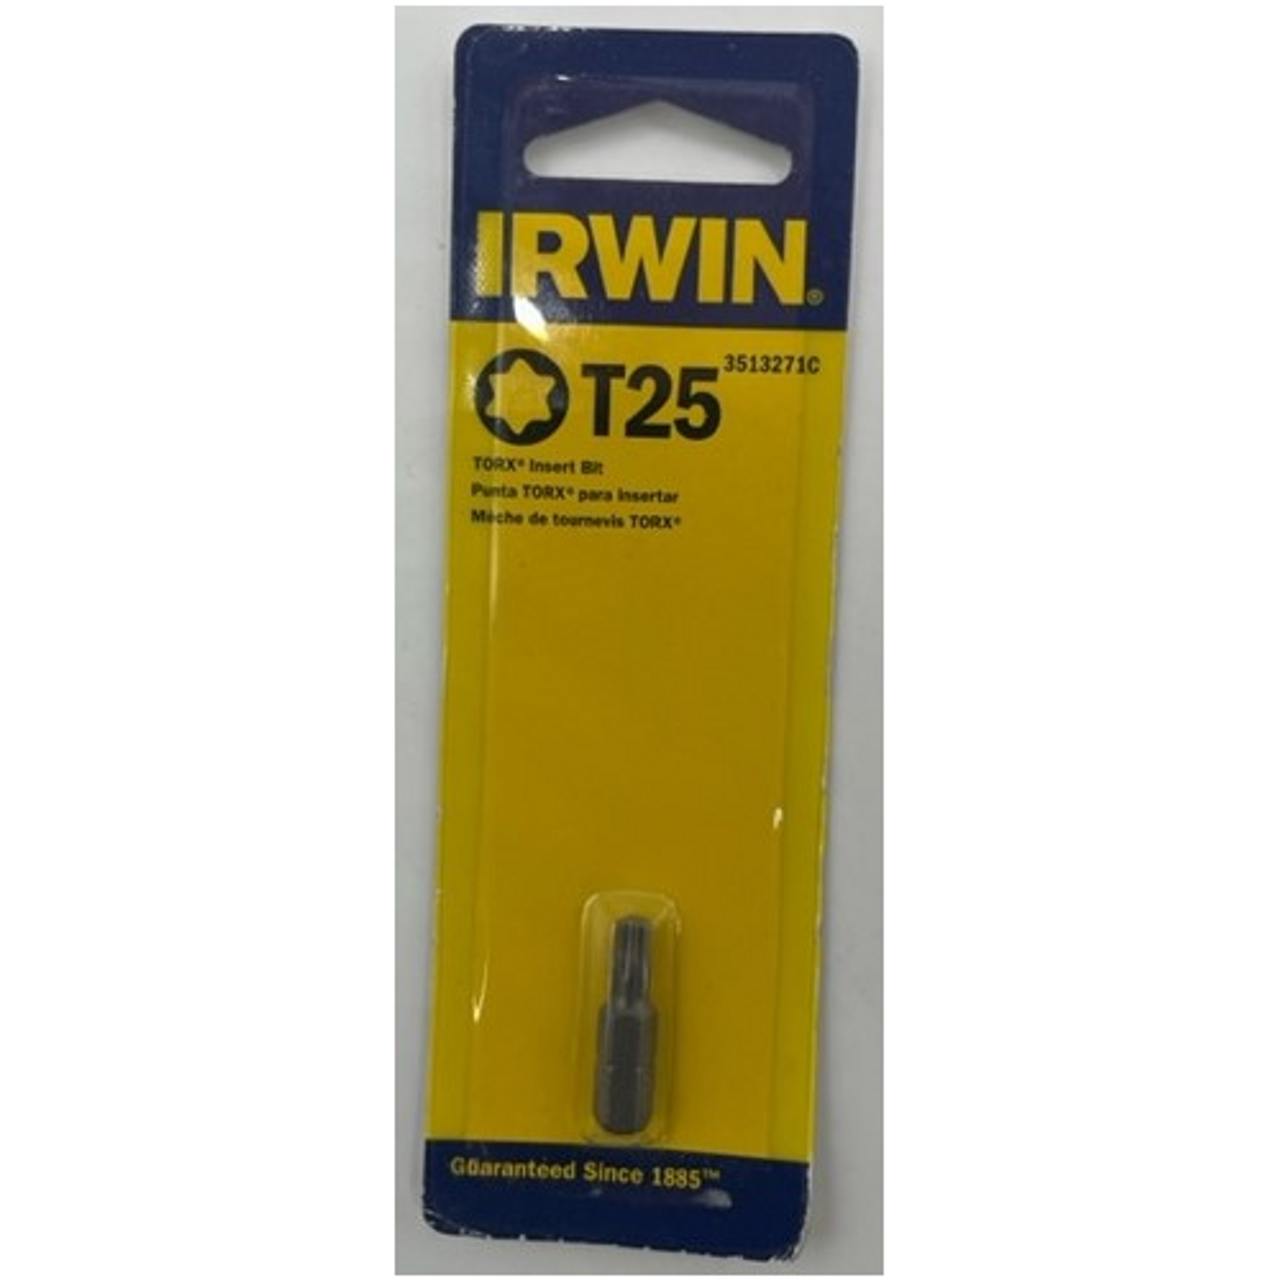 Irwin 3513271C Torx Insert Bit T25 x 1 inch - 1 pack